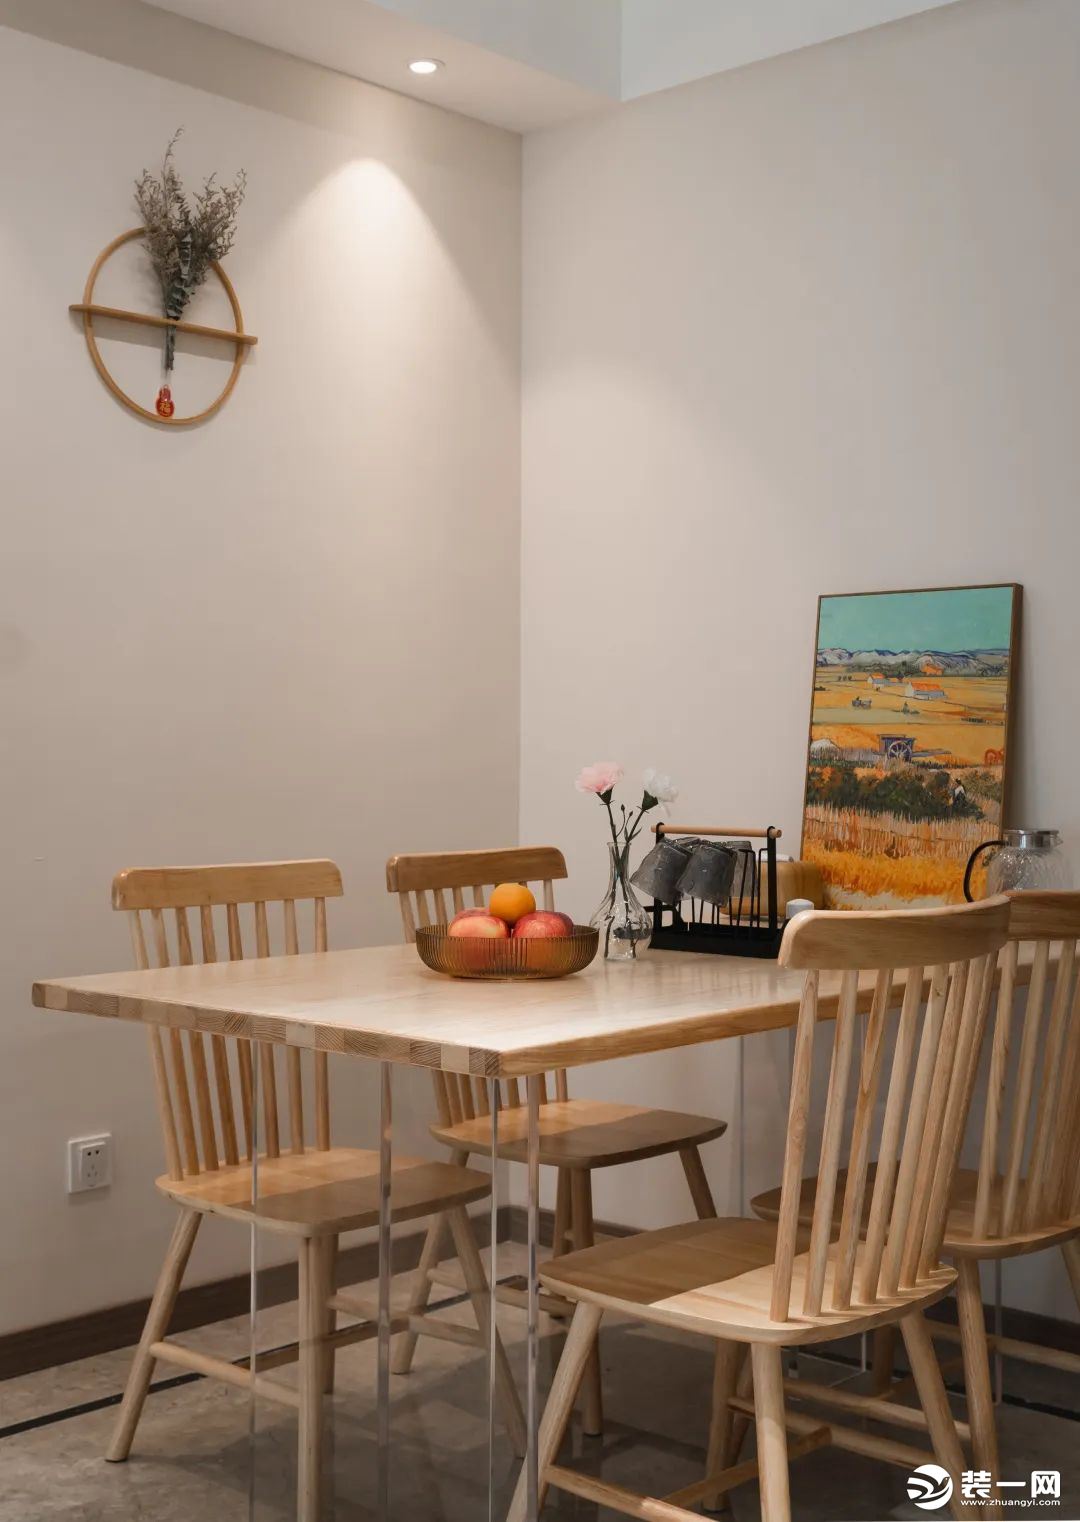 挑选亚克力桌角的悬浮餐桌，轻盈缤纷的油画+原木餐桌椅，调和出平和安定来。没有多余的色彩冗杂，营造自然